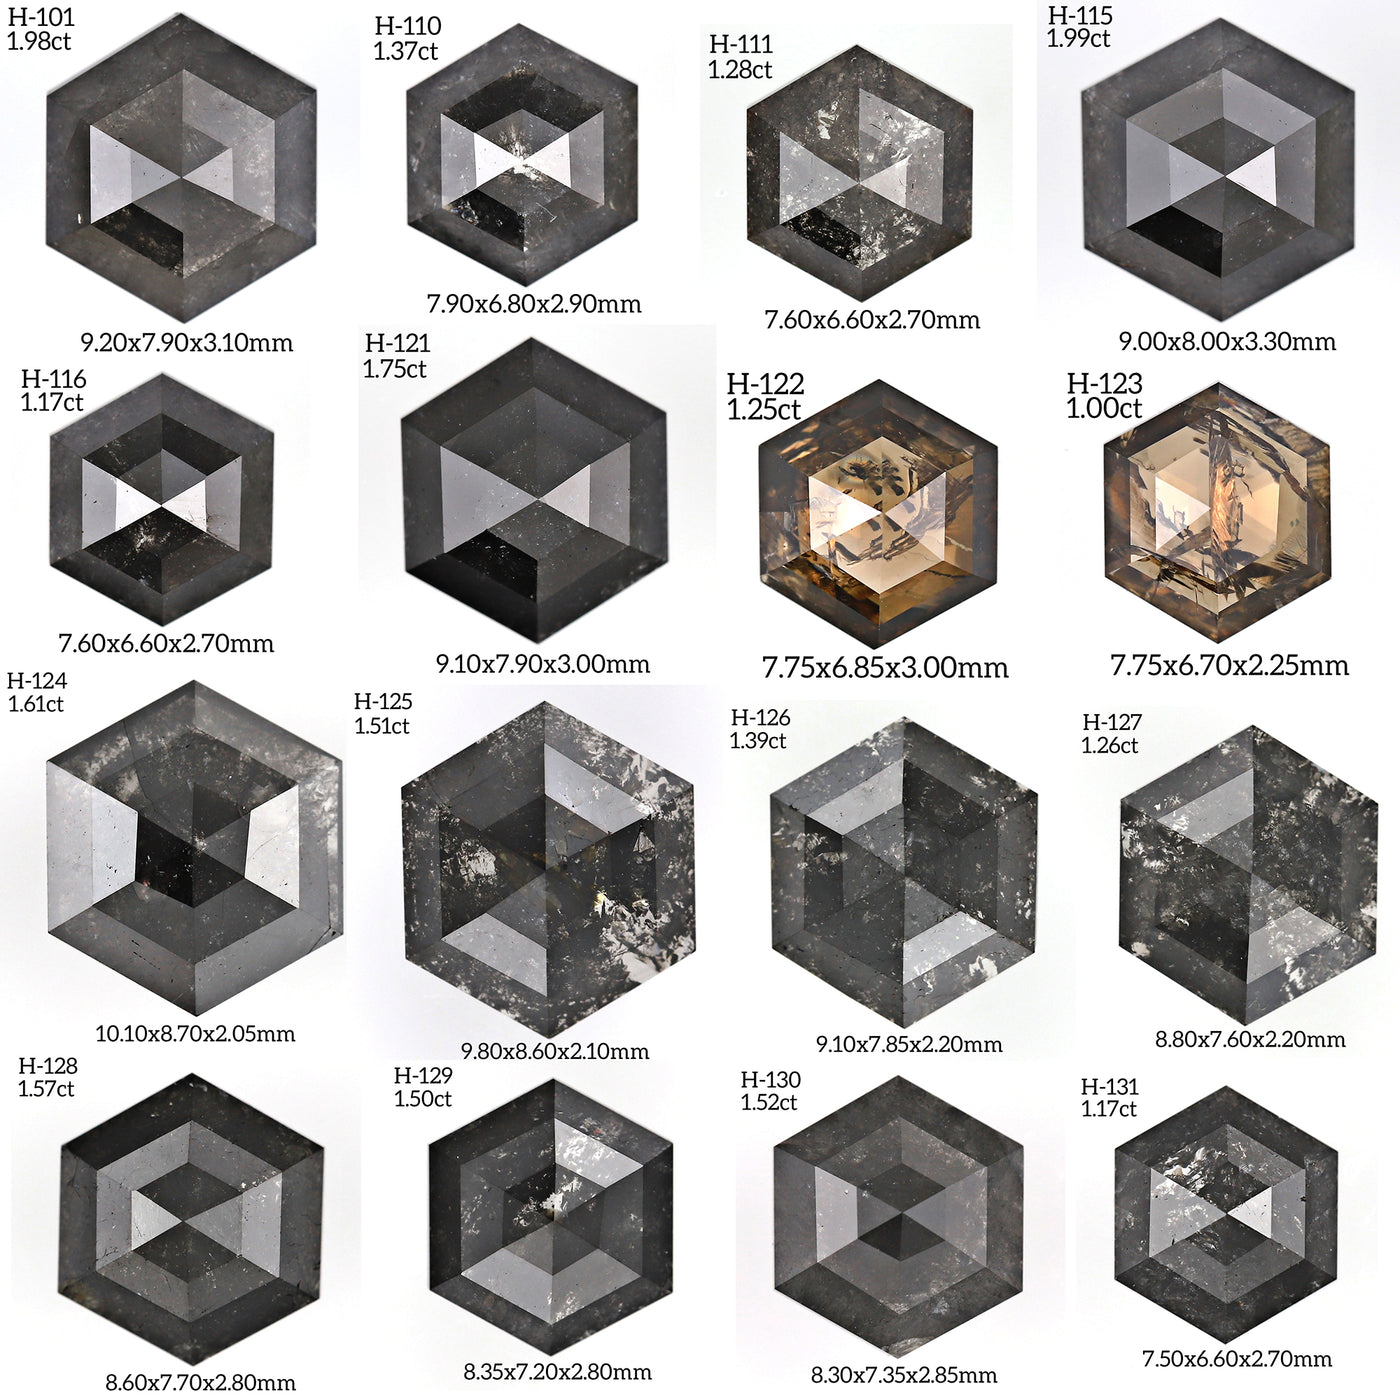 H130 - Salt and pepper hexagon diamond